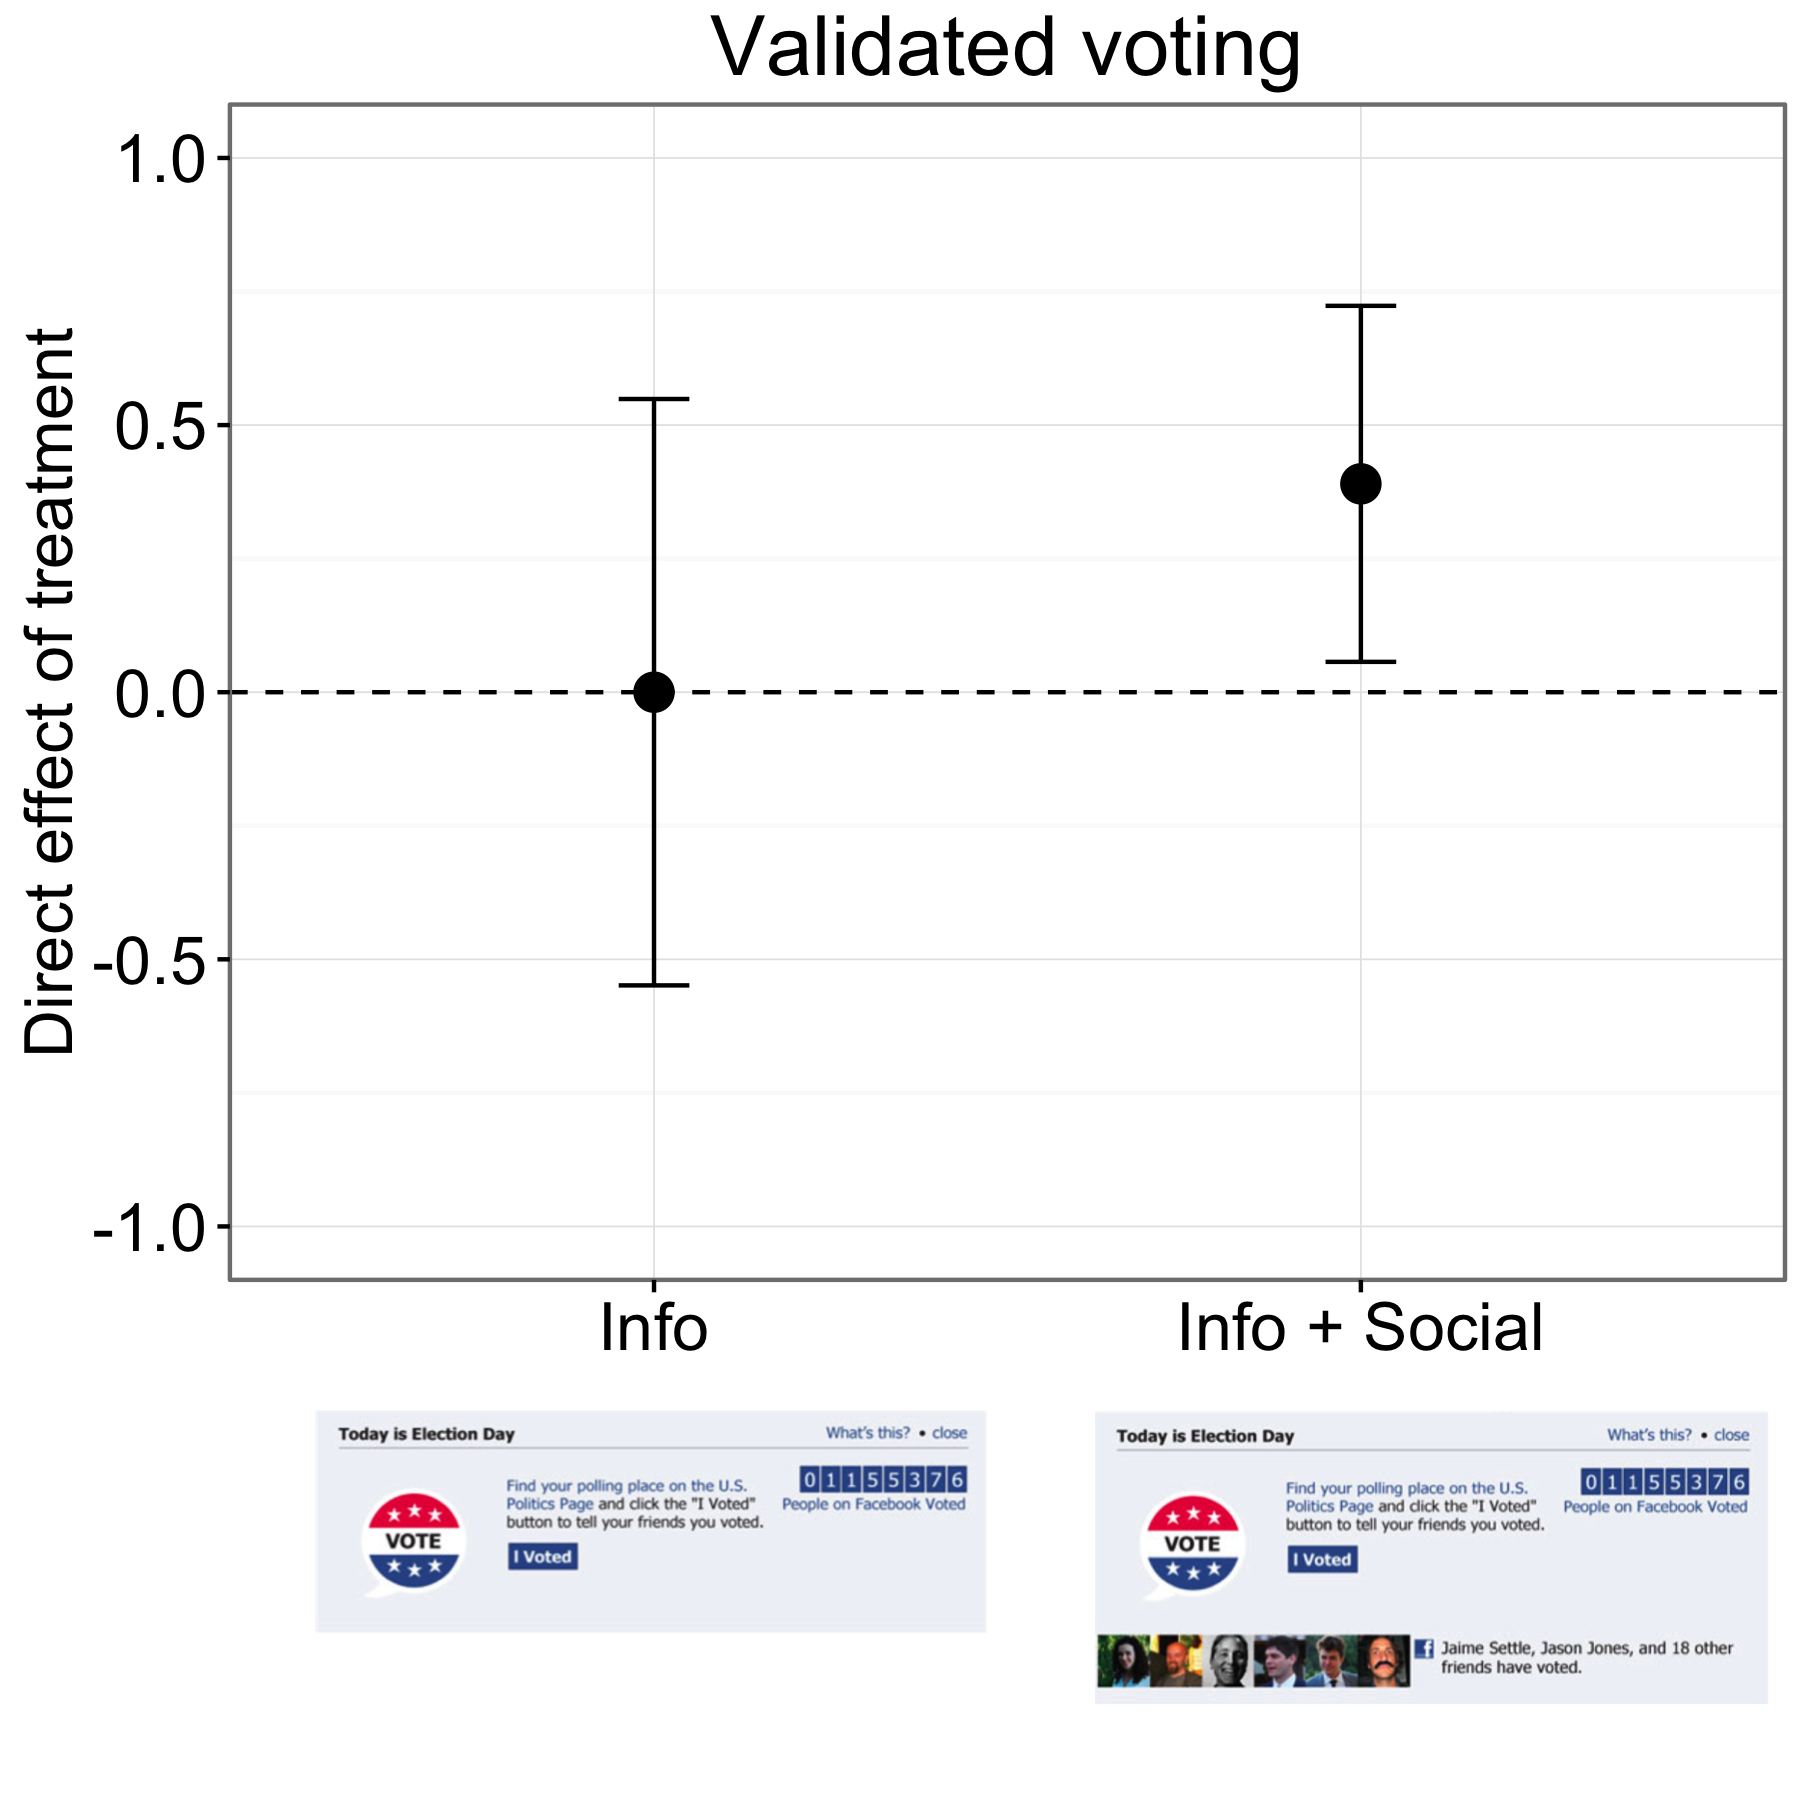 Figur 4.18: Resultat från ett utkörningsexperiment på Facebook (Bond et al. 2012). Deltagarna i Info-gruppen röstade i samma takt som i kontrollgruppen, men personer i Info + Socialgruppen röstade med en något högre ränta. Barer representerar beräknade 95% konfidensintervaller. Resultatet i diagrammet är för de cirka sex miljoner deltagarna som matchades med röstningsrekord. Anpassad från Bond et al. (2012), figur 1.